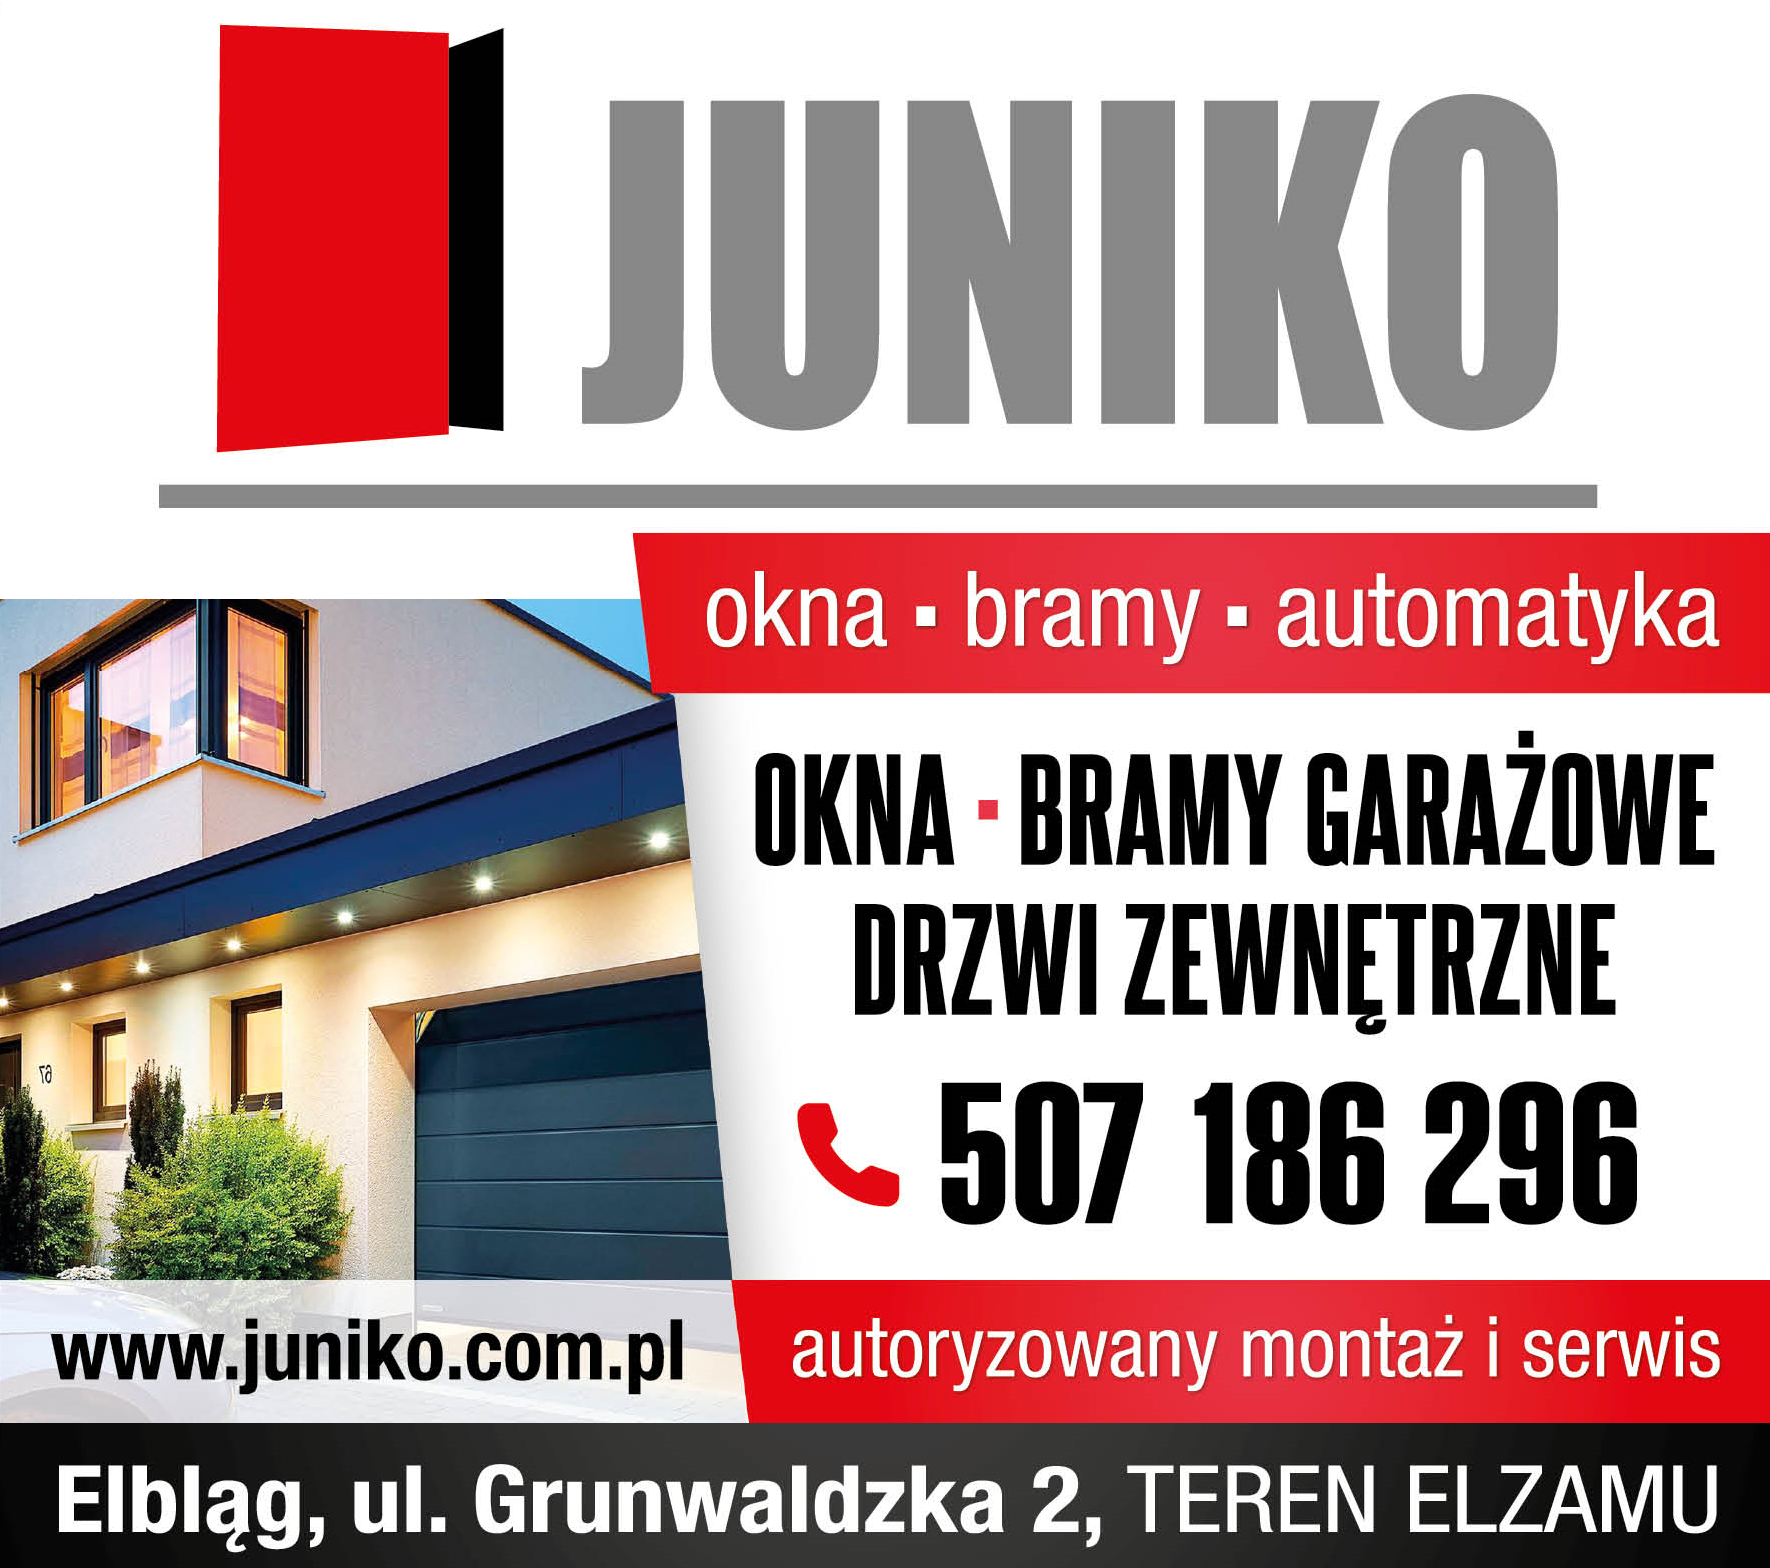 JUNIKO Elbląg Okna / Bramy Garażowe / Drzwi Zewnętrzne / Automatyka / Autoryzowany Montaż i Serwis